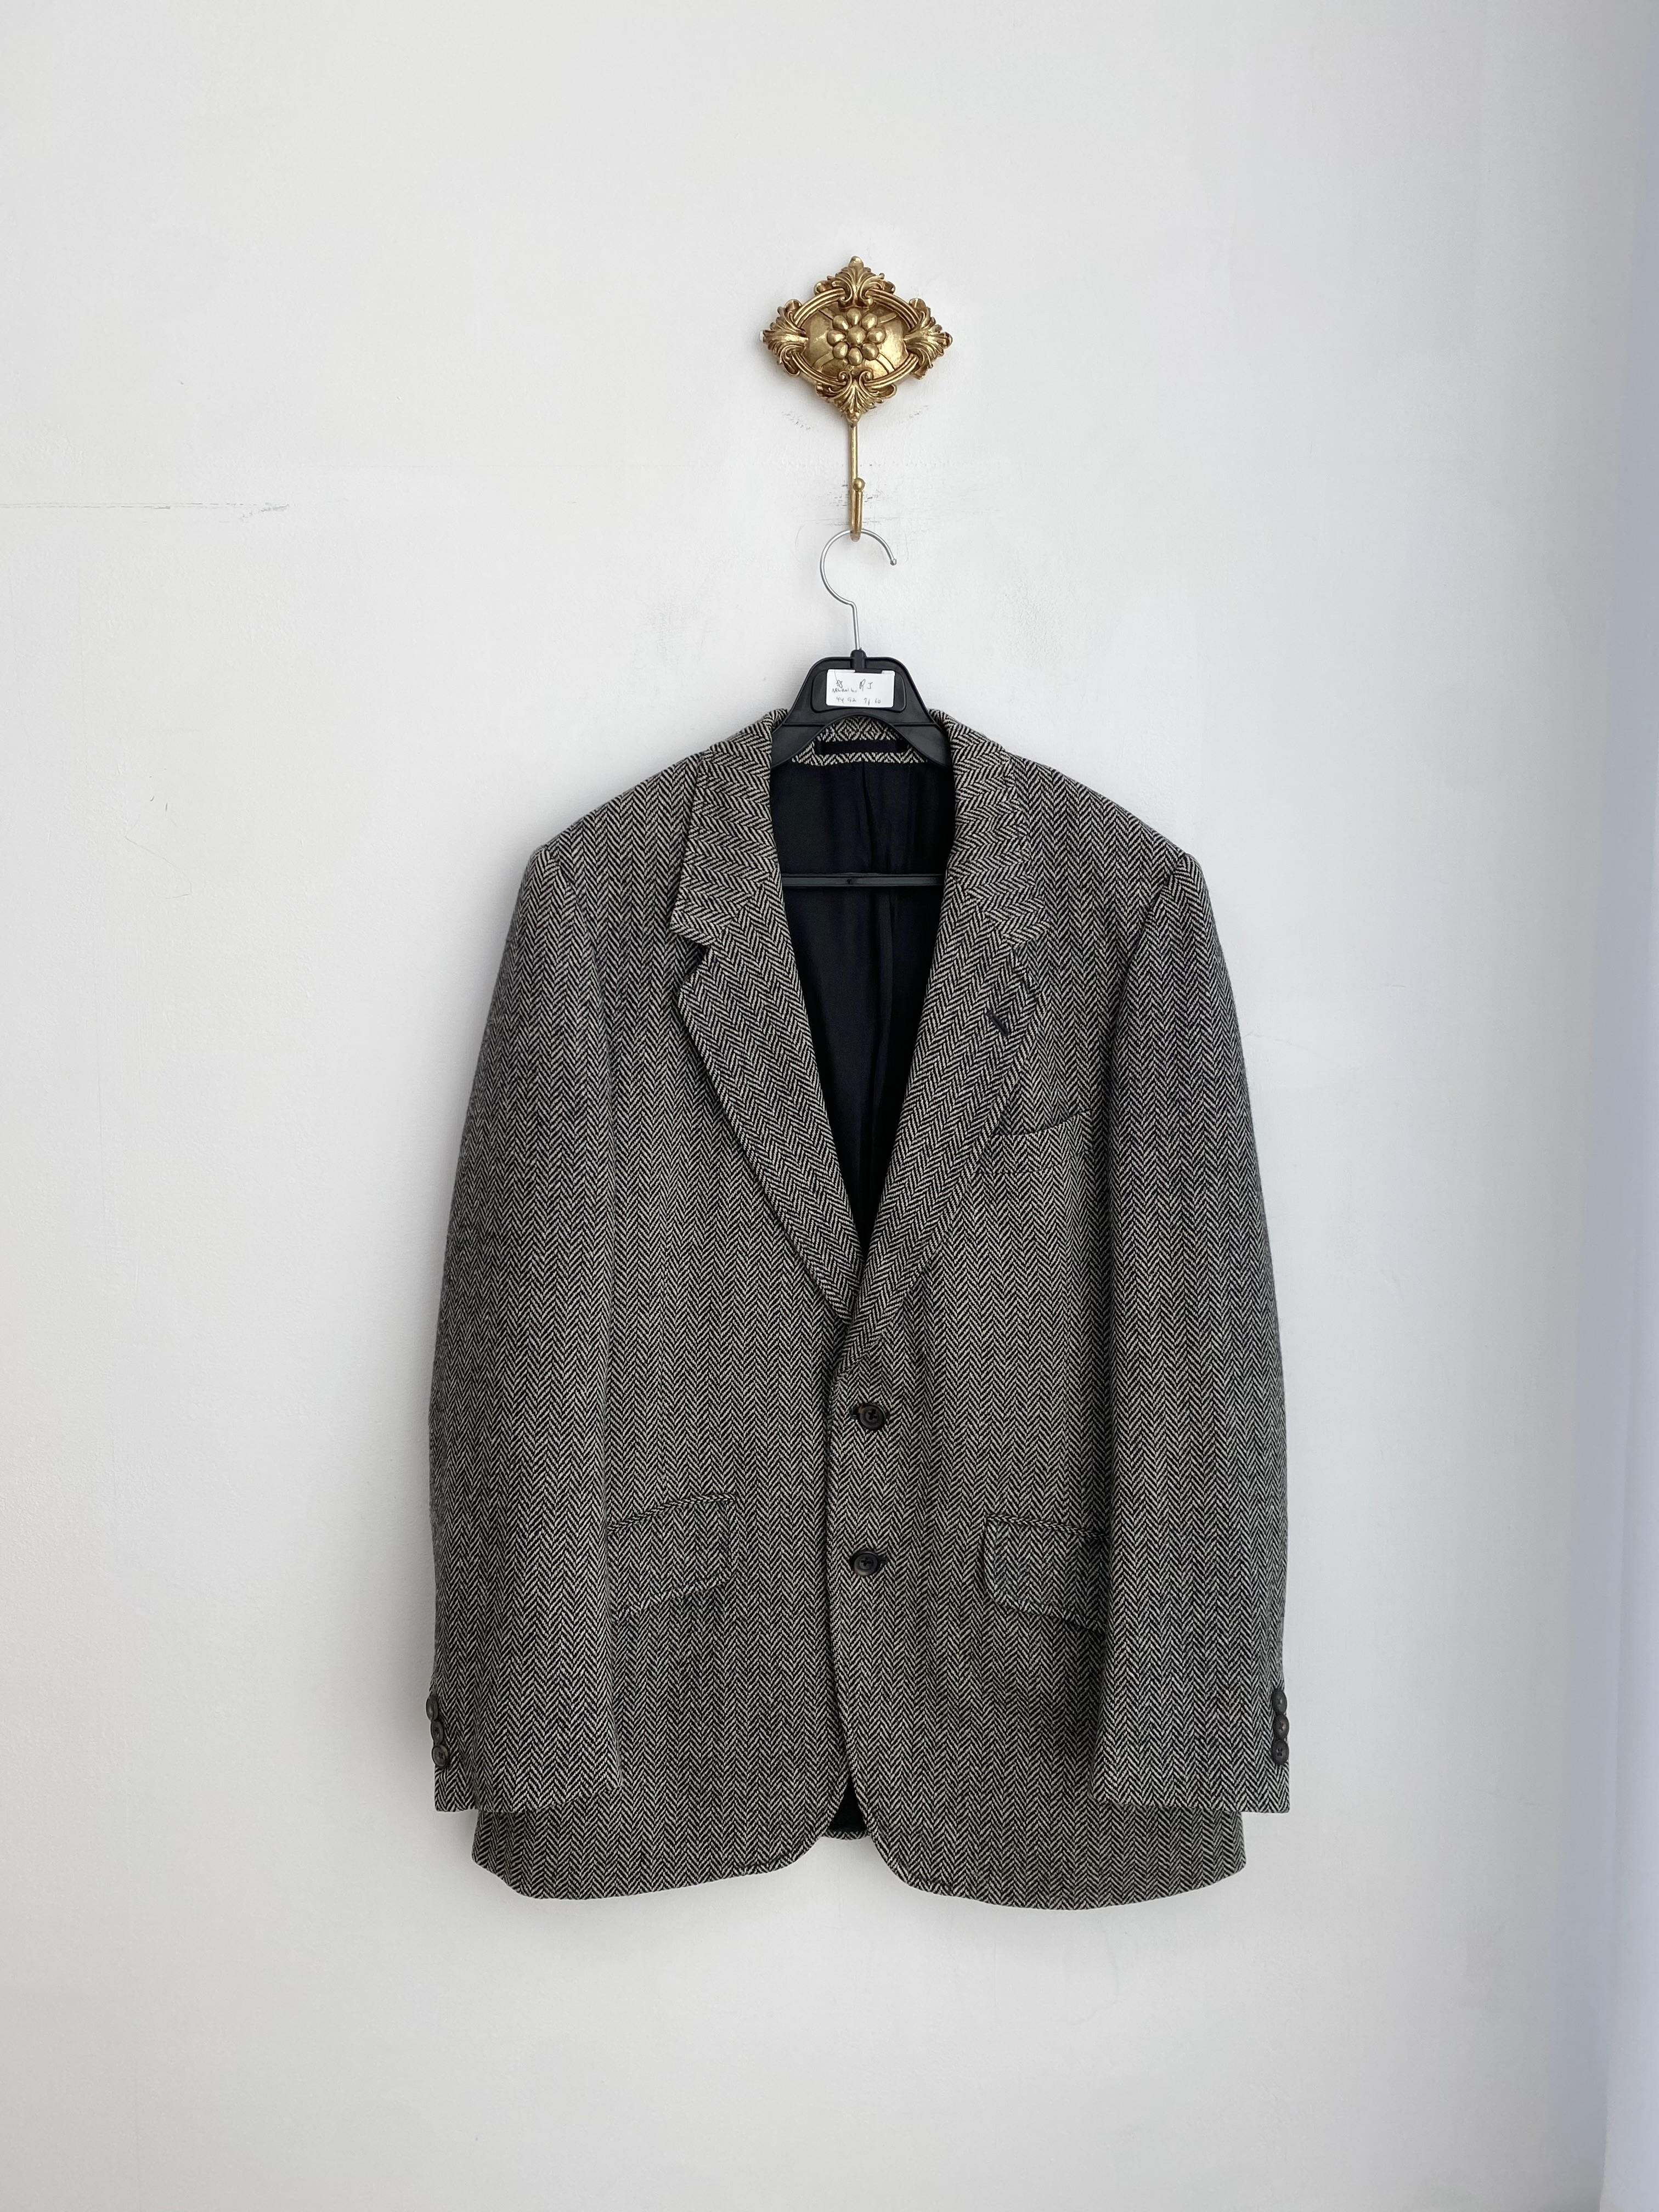 Aquascutum black herringbone new wool jacket (made in england)